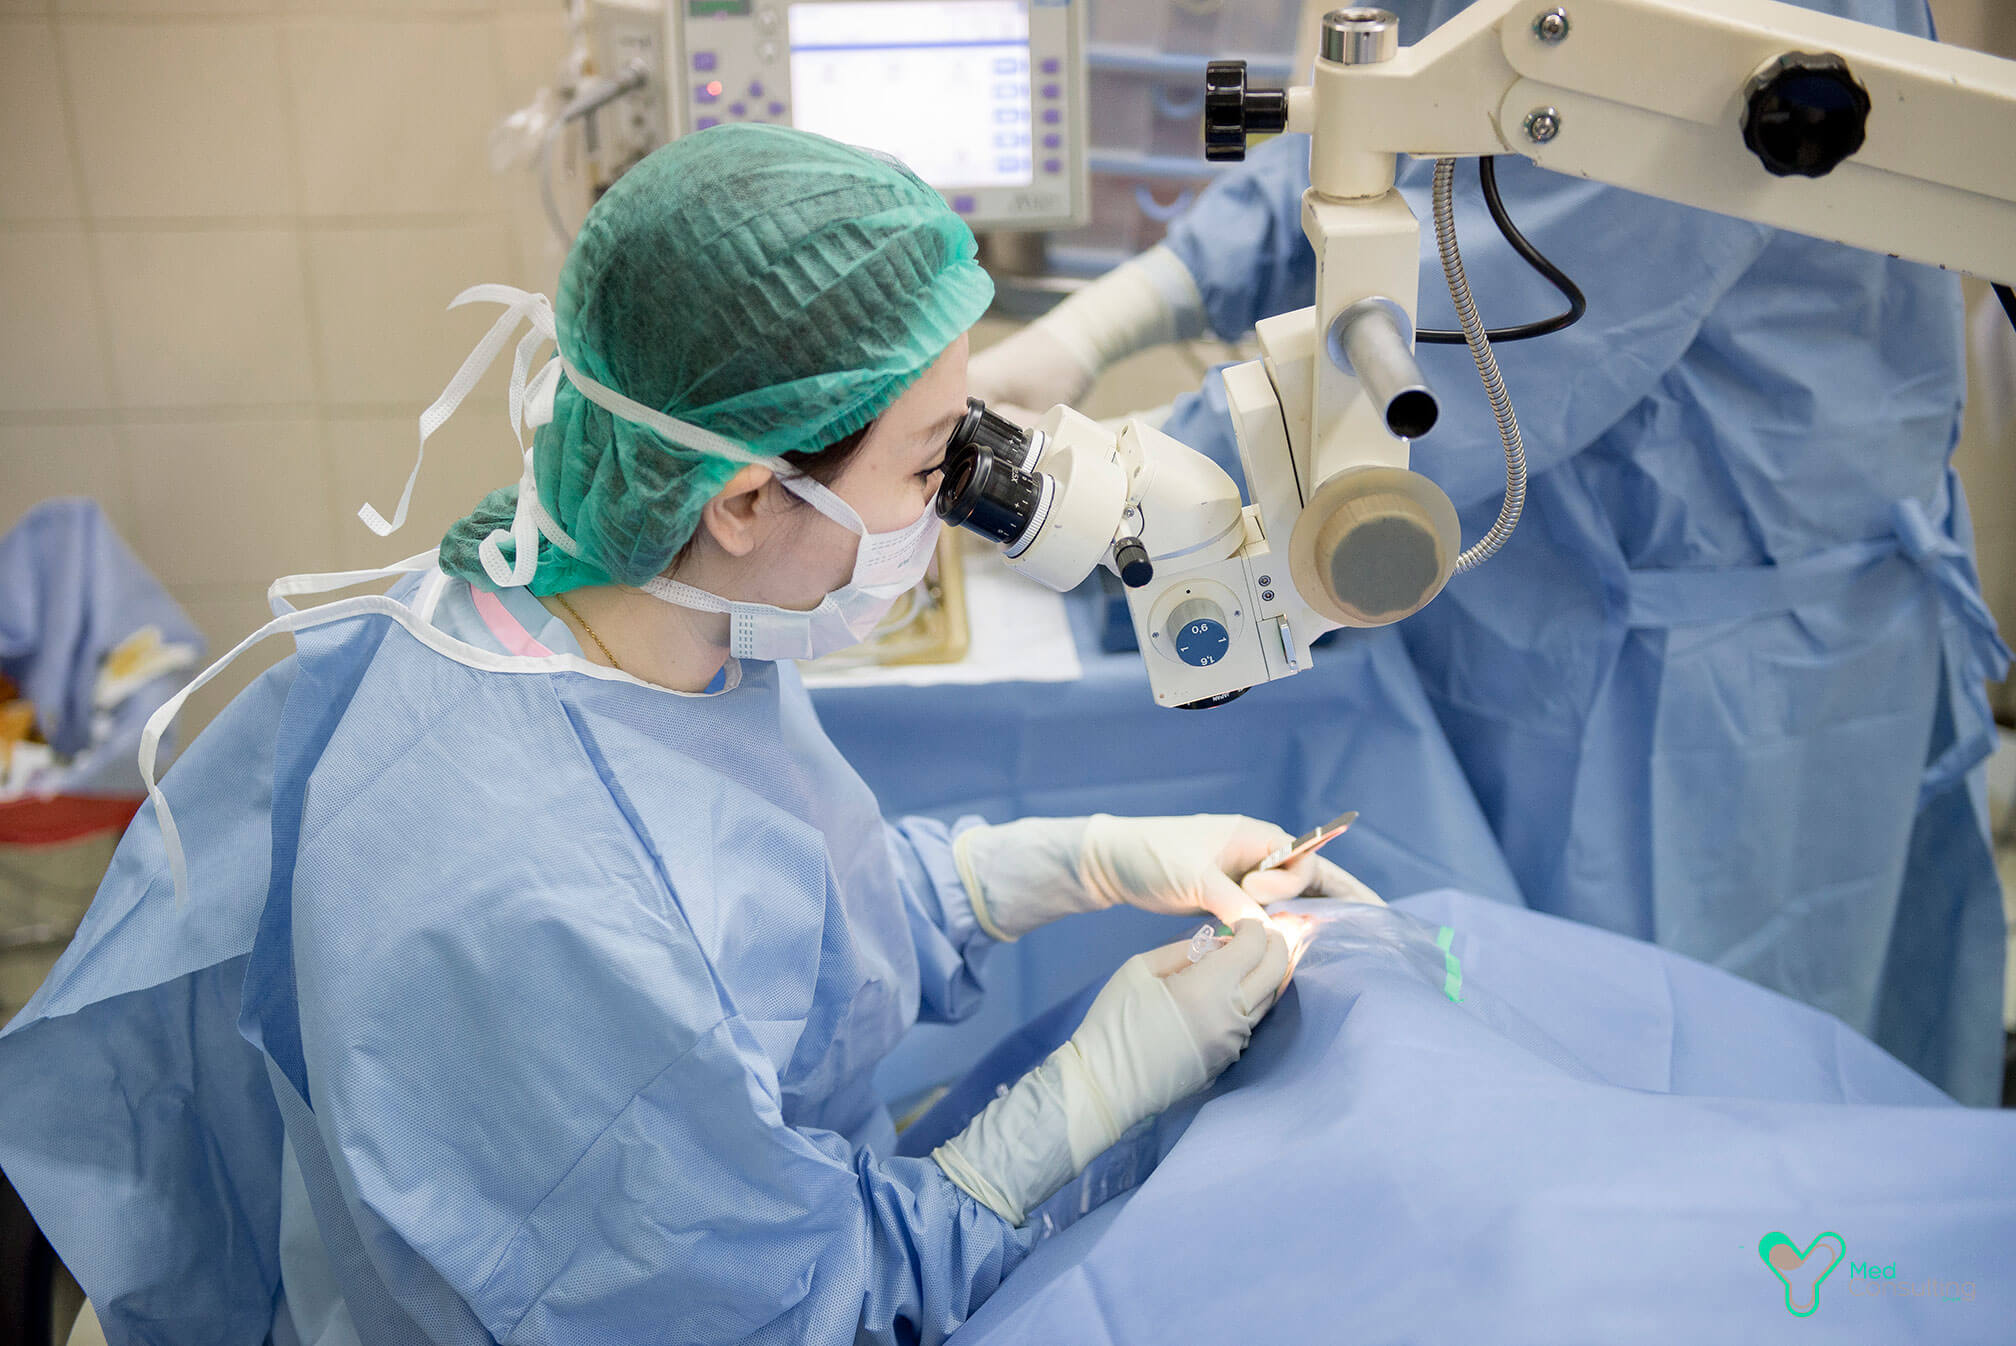 Операция катаракта замена хрусталика отзывы